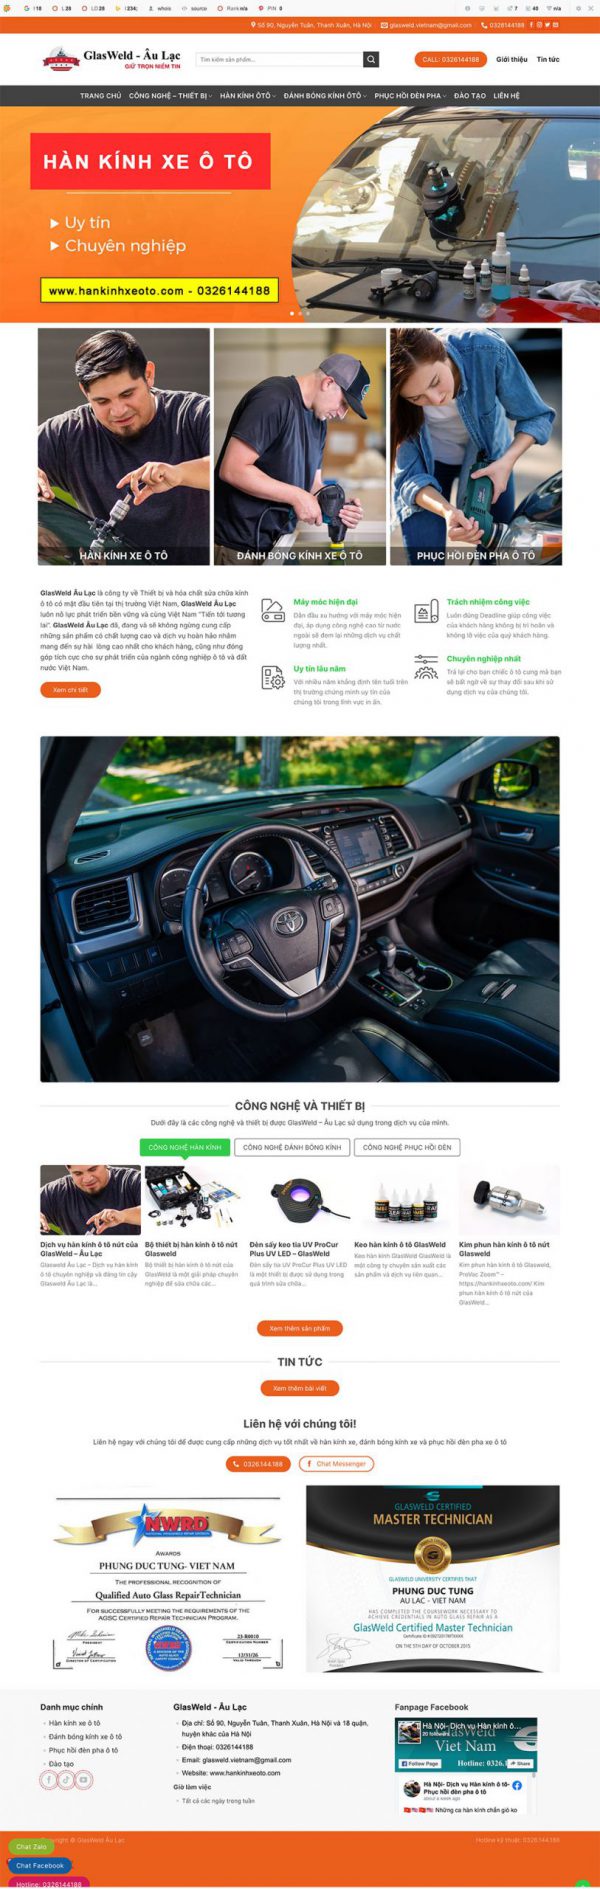 Theme wordpress website dịch vụ hàn kính xe ô tô